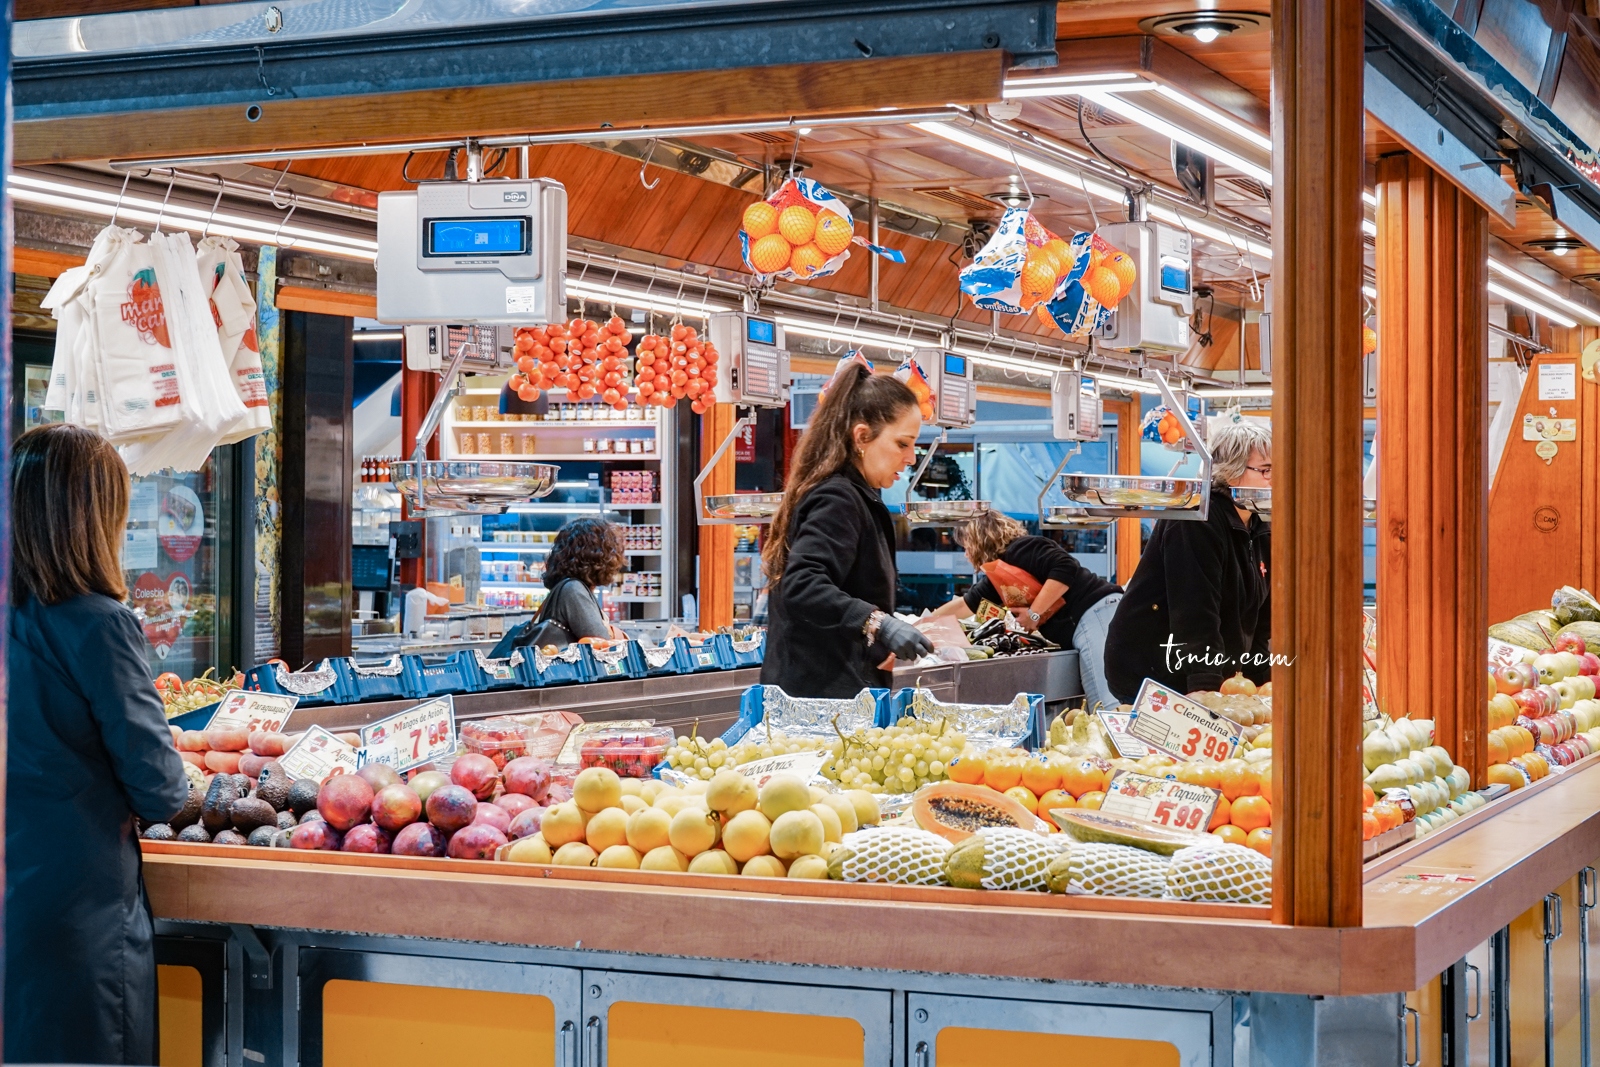 西班牙馬德里美食推薦 Mercado de la Paz 隱身貴婦區的馬德里傳統市場